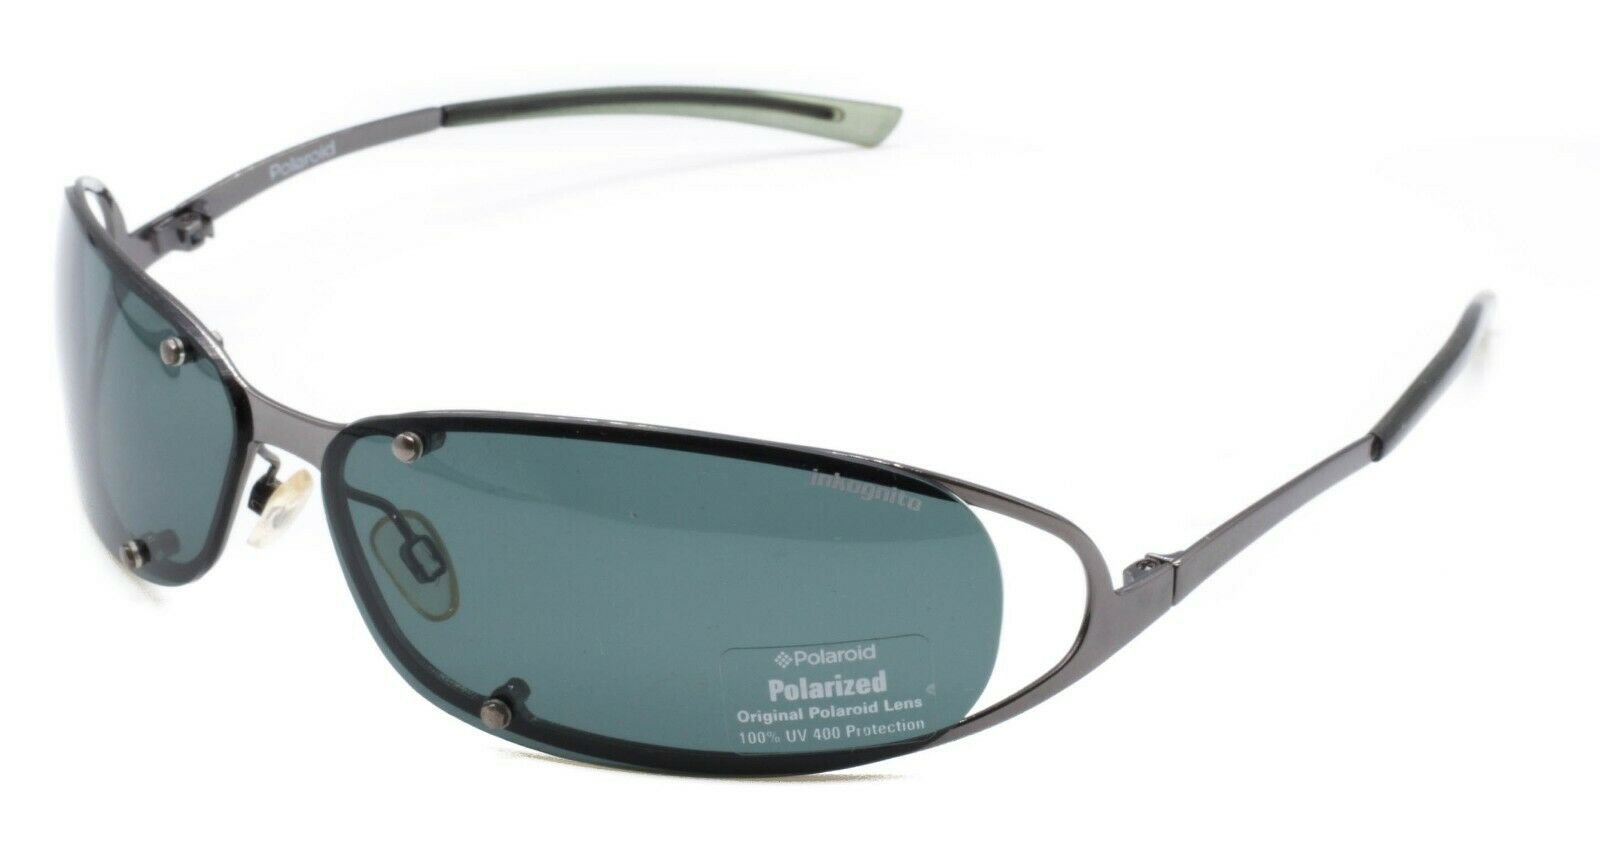 uniek Patriottisch Dollar POLAROID Inkognito Trends 5409 A Filter Cat. 3 70mm Shades Glasses Frames -  New - GGV Eyewear